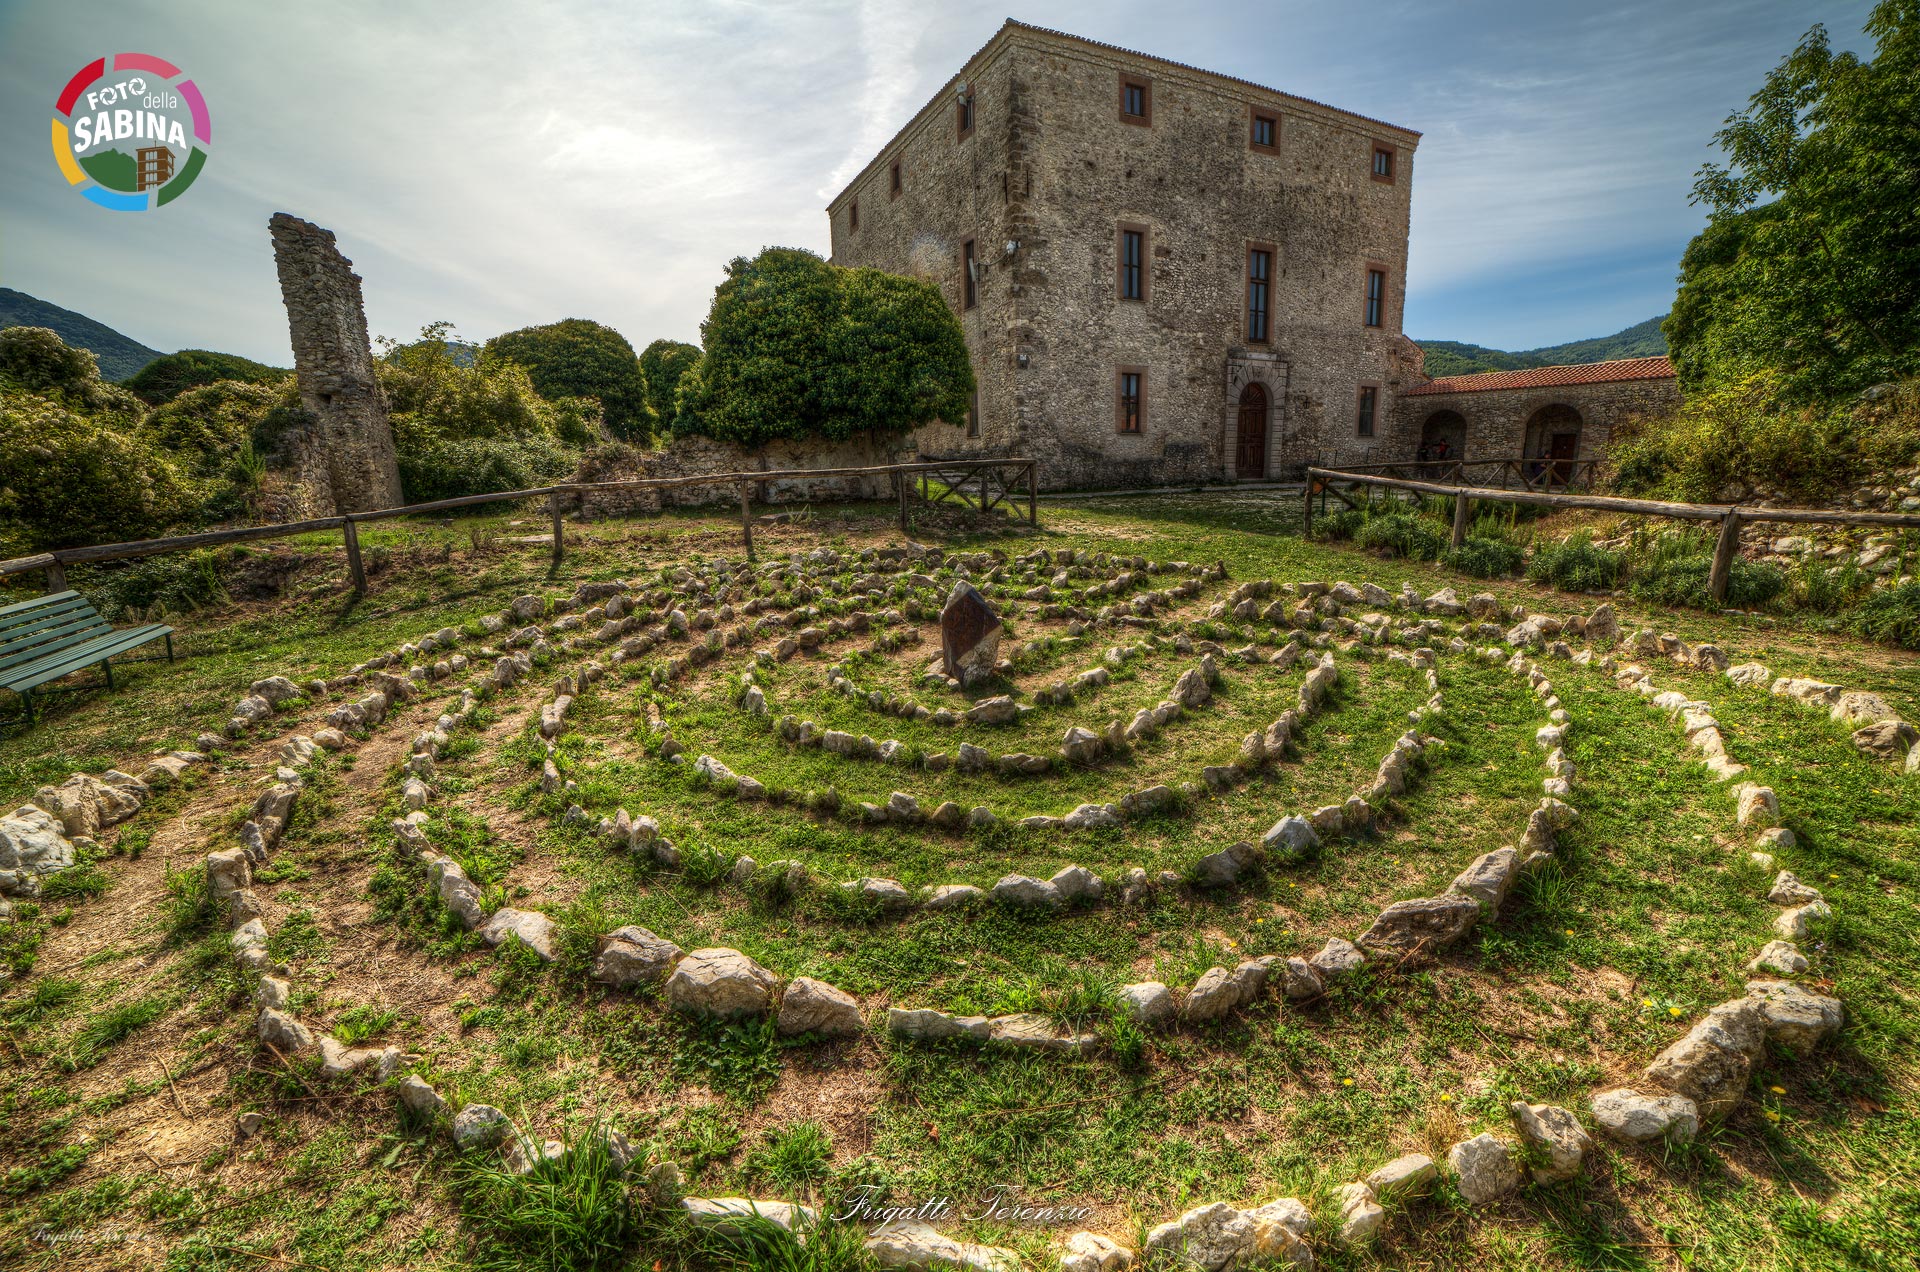 FOTO DELLA SABINA | Castel di Tora - Terenzio Frigatti